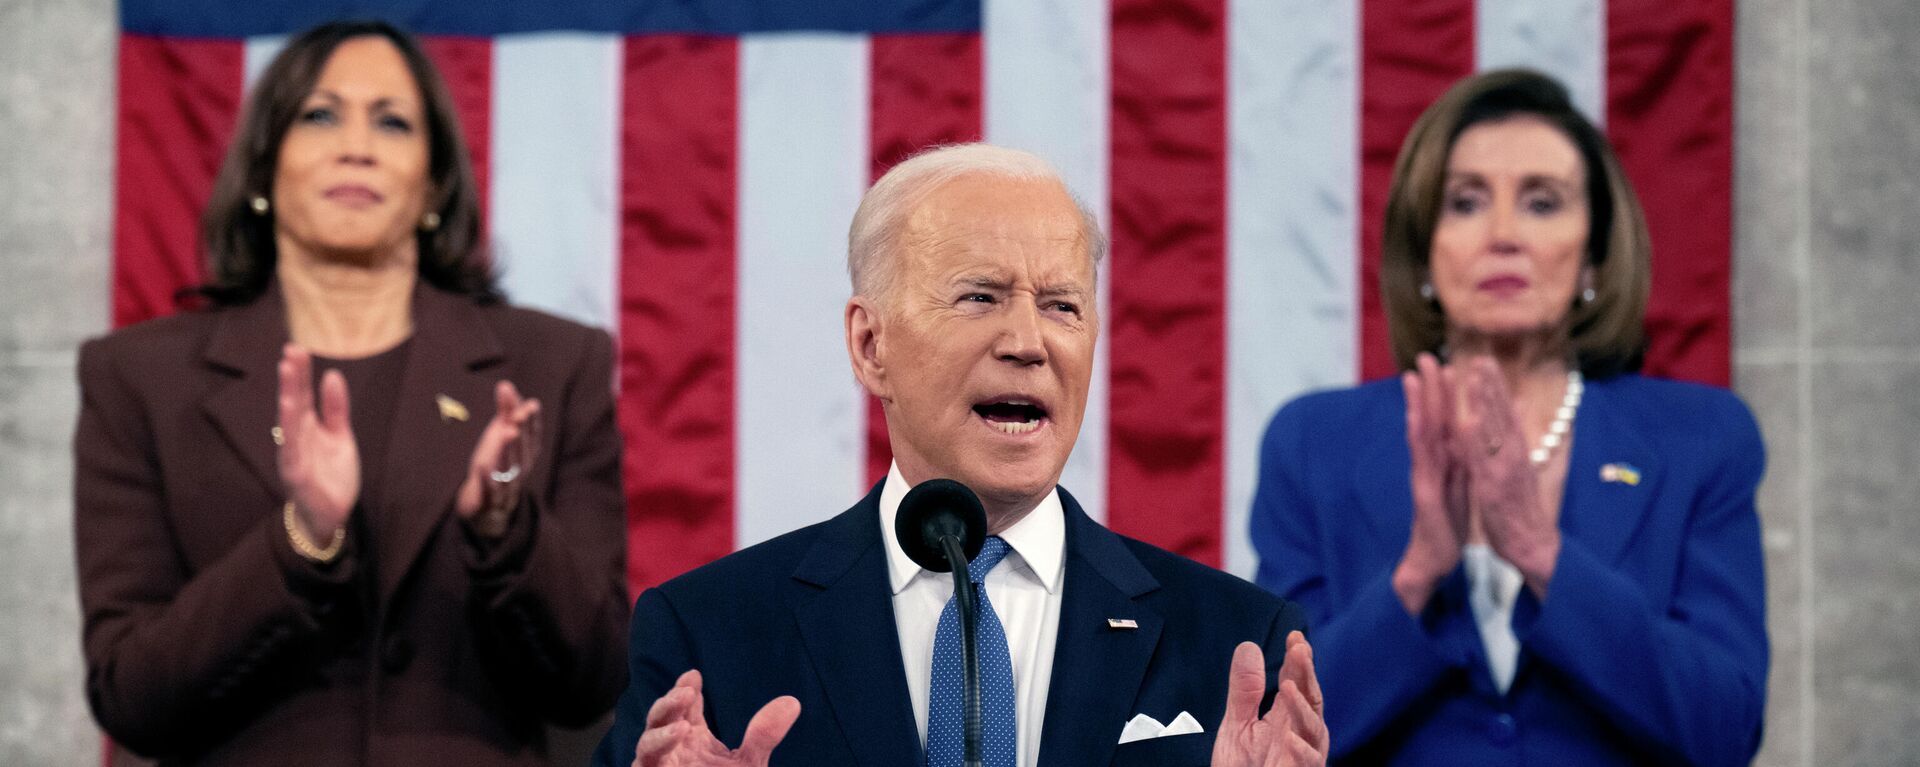 O presidente Joe Biden faz seu discurso do Estado da União, Congresso norte-americano, em Washington, em 1º de março de 2022 - Sputnik Brasil, 1920, 01.03.2022